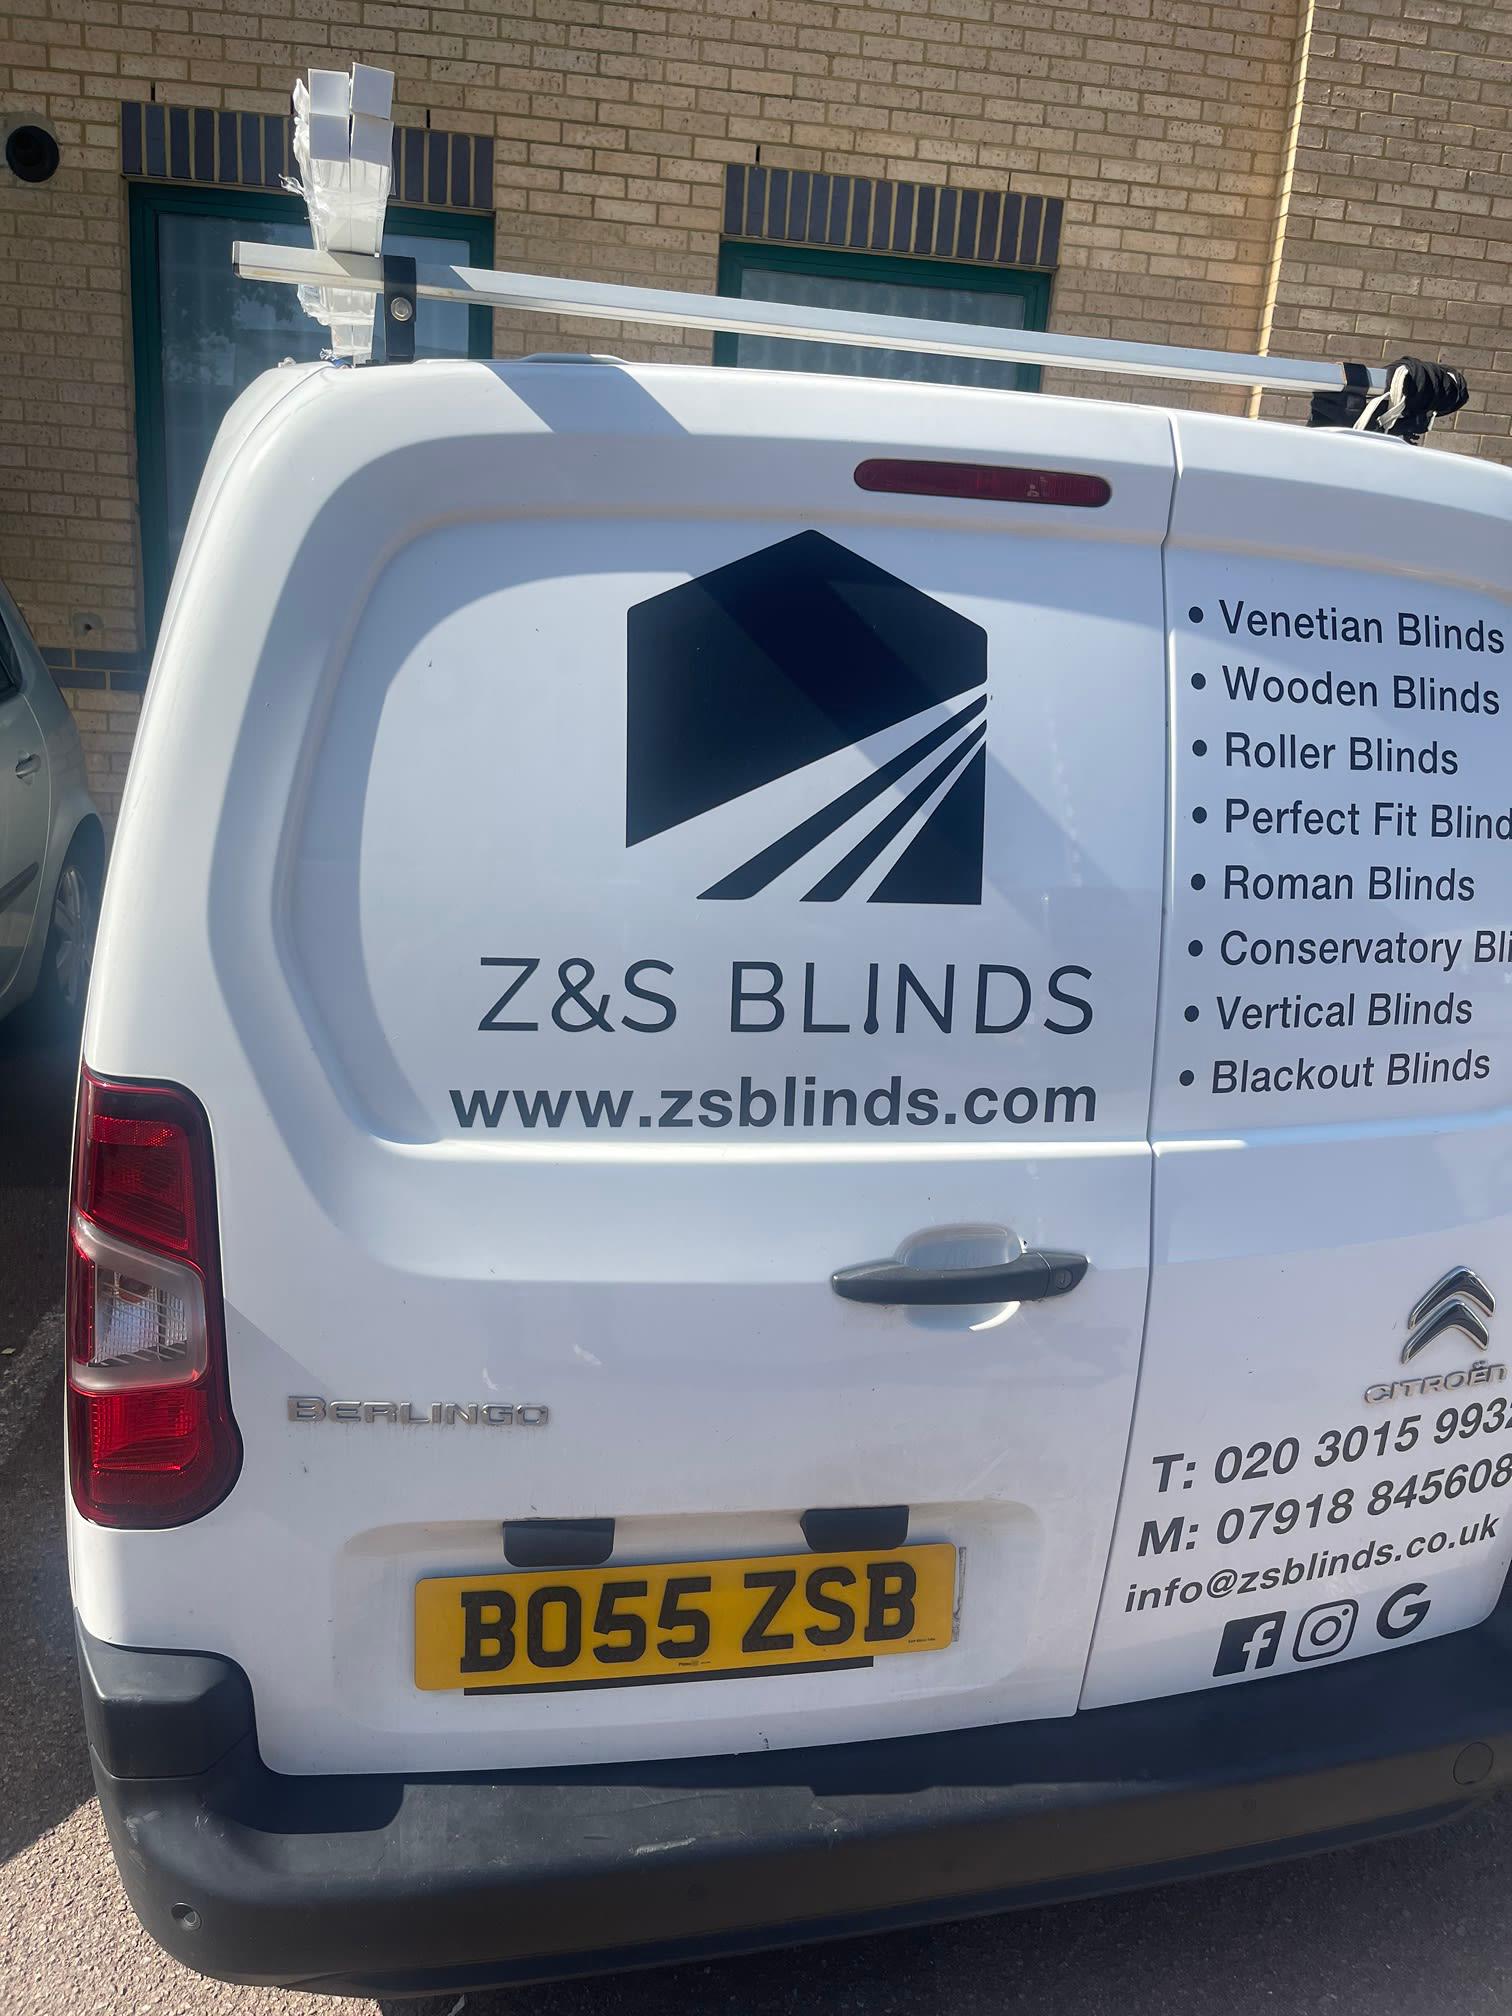 Images Z & S Blinds Ltd